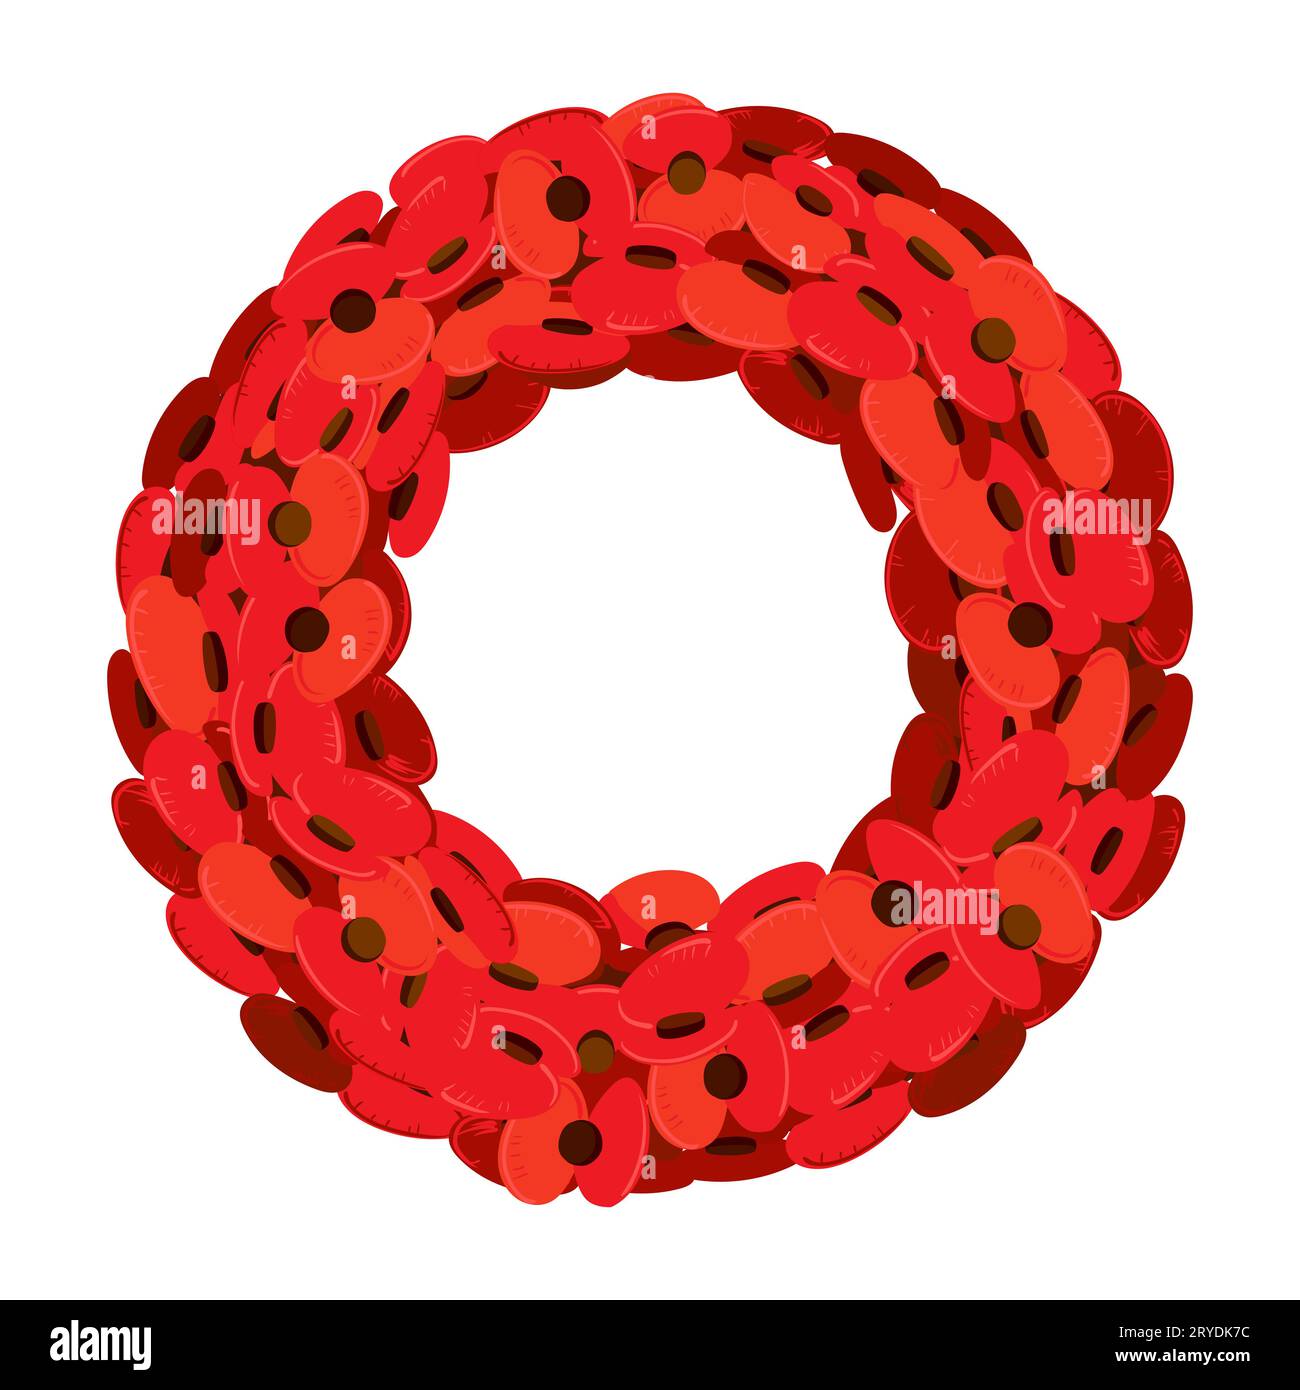 Une couronne traditionnelle de fleurs rouges pour le jour du souvenir (aussi connu sous le nom de jour du coquelicot) en mémoire des militaires morts dans l'exercice de leurs fonctions. Vecteur Illustration de Vecteur